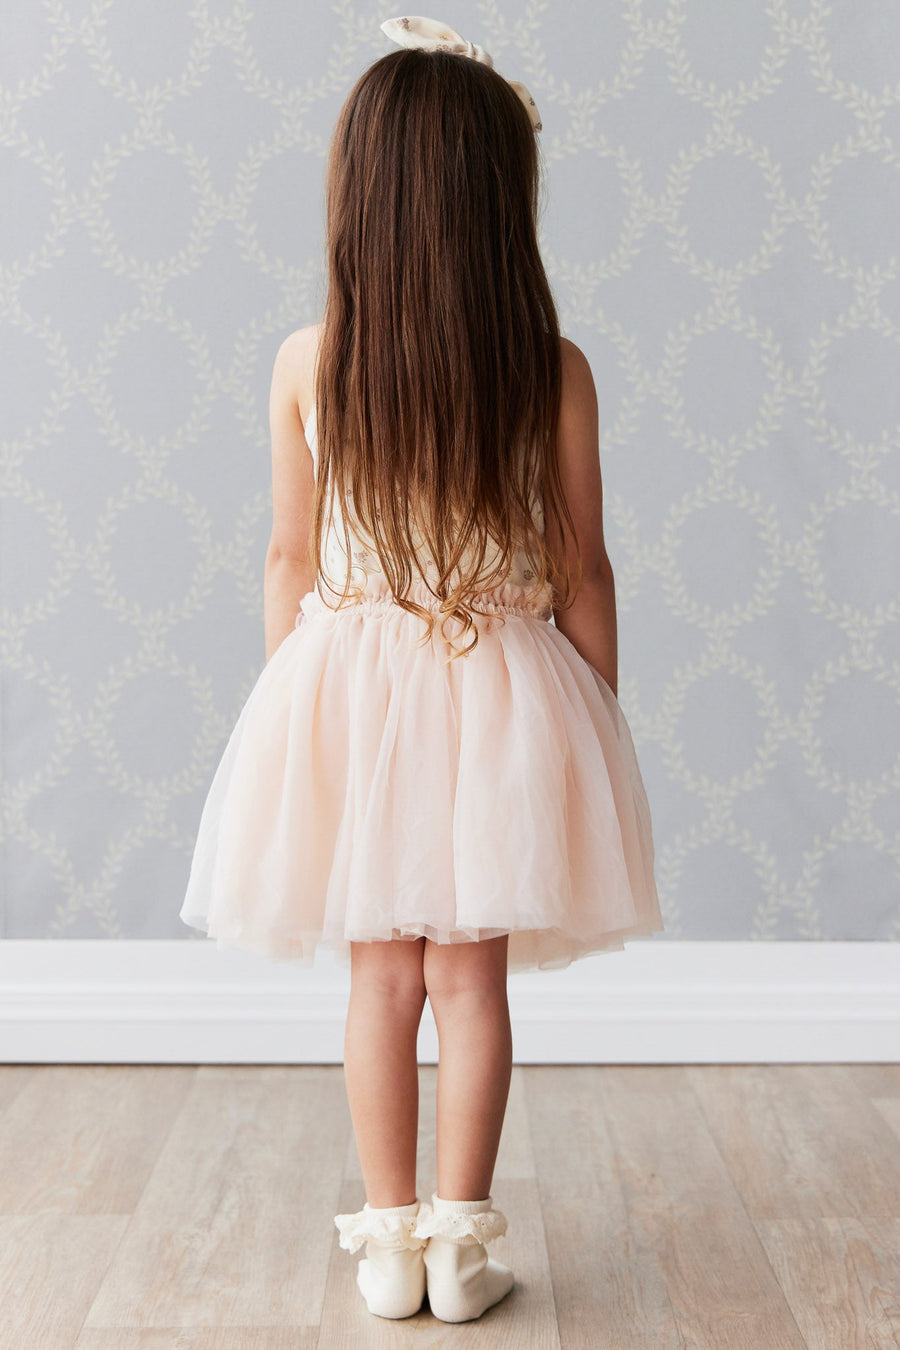 Classic Tutu Skirt - Boto Pink Childrens Skirt from Jamie Kay USA